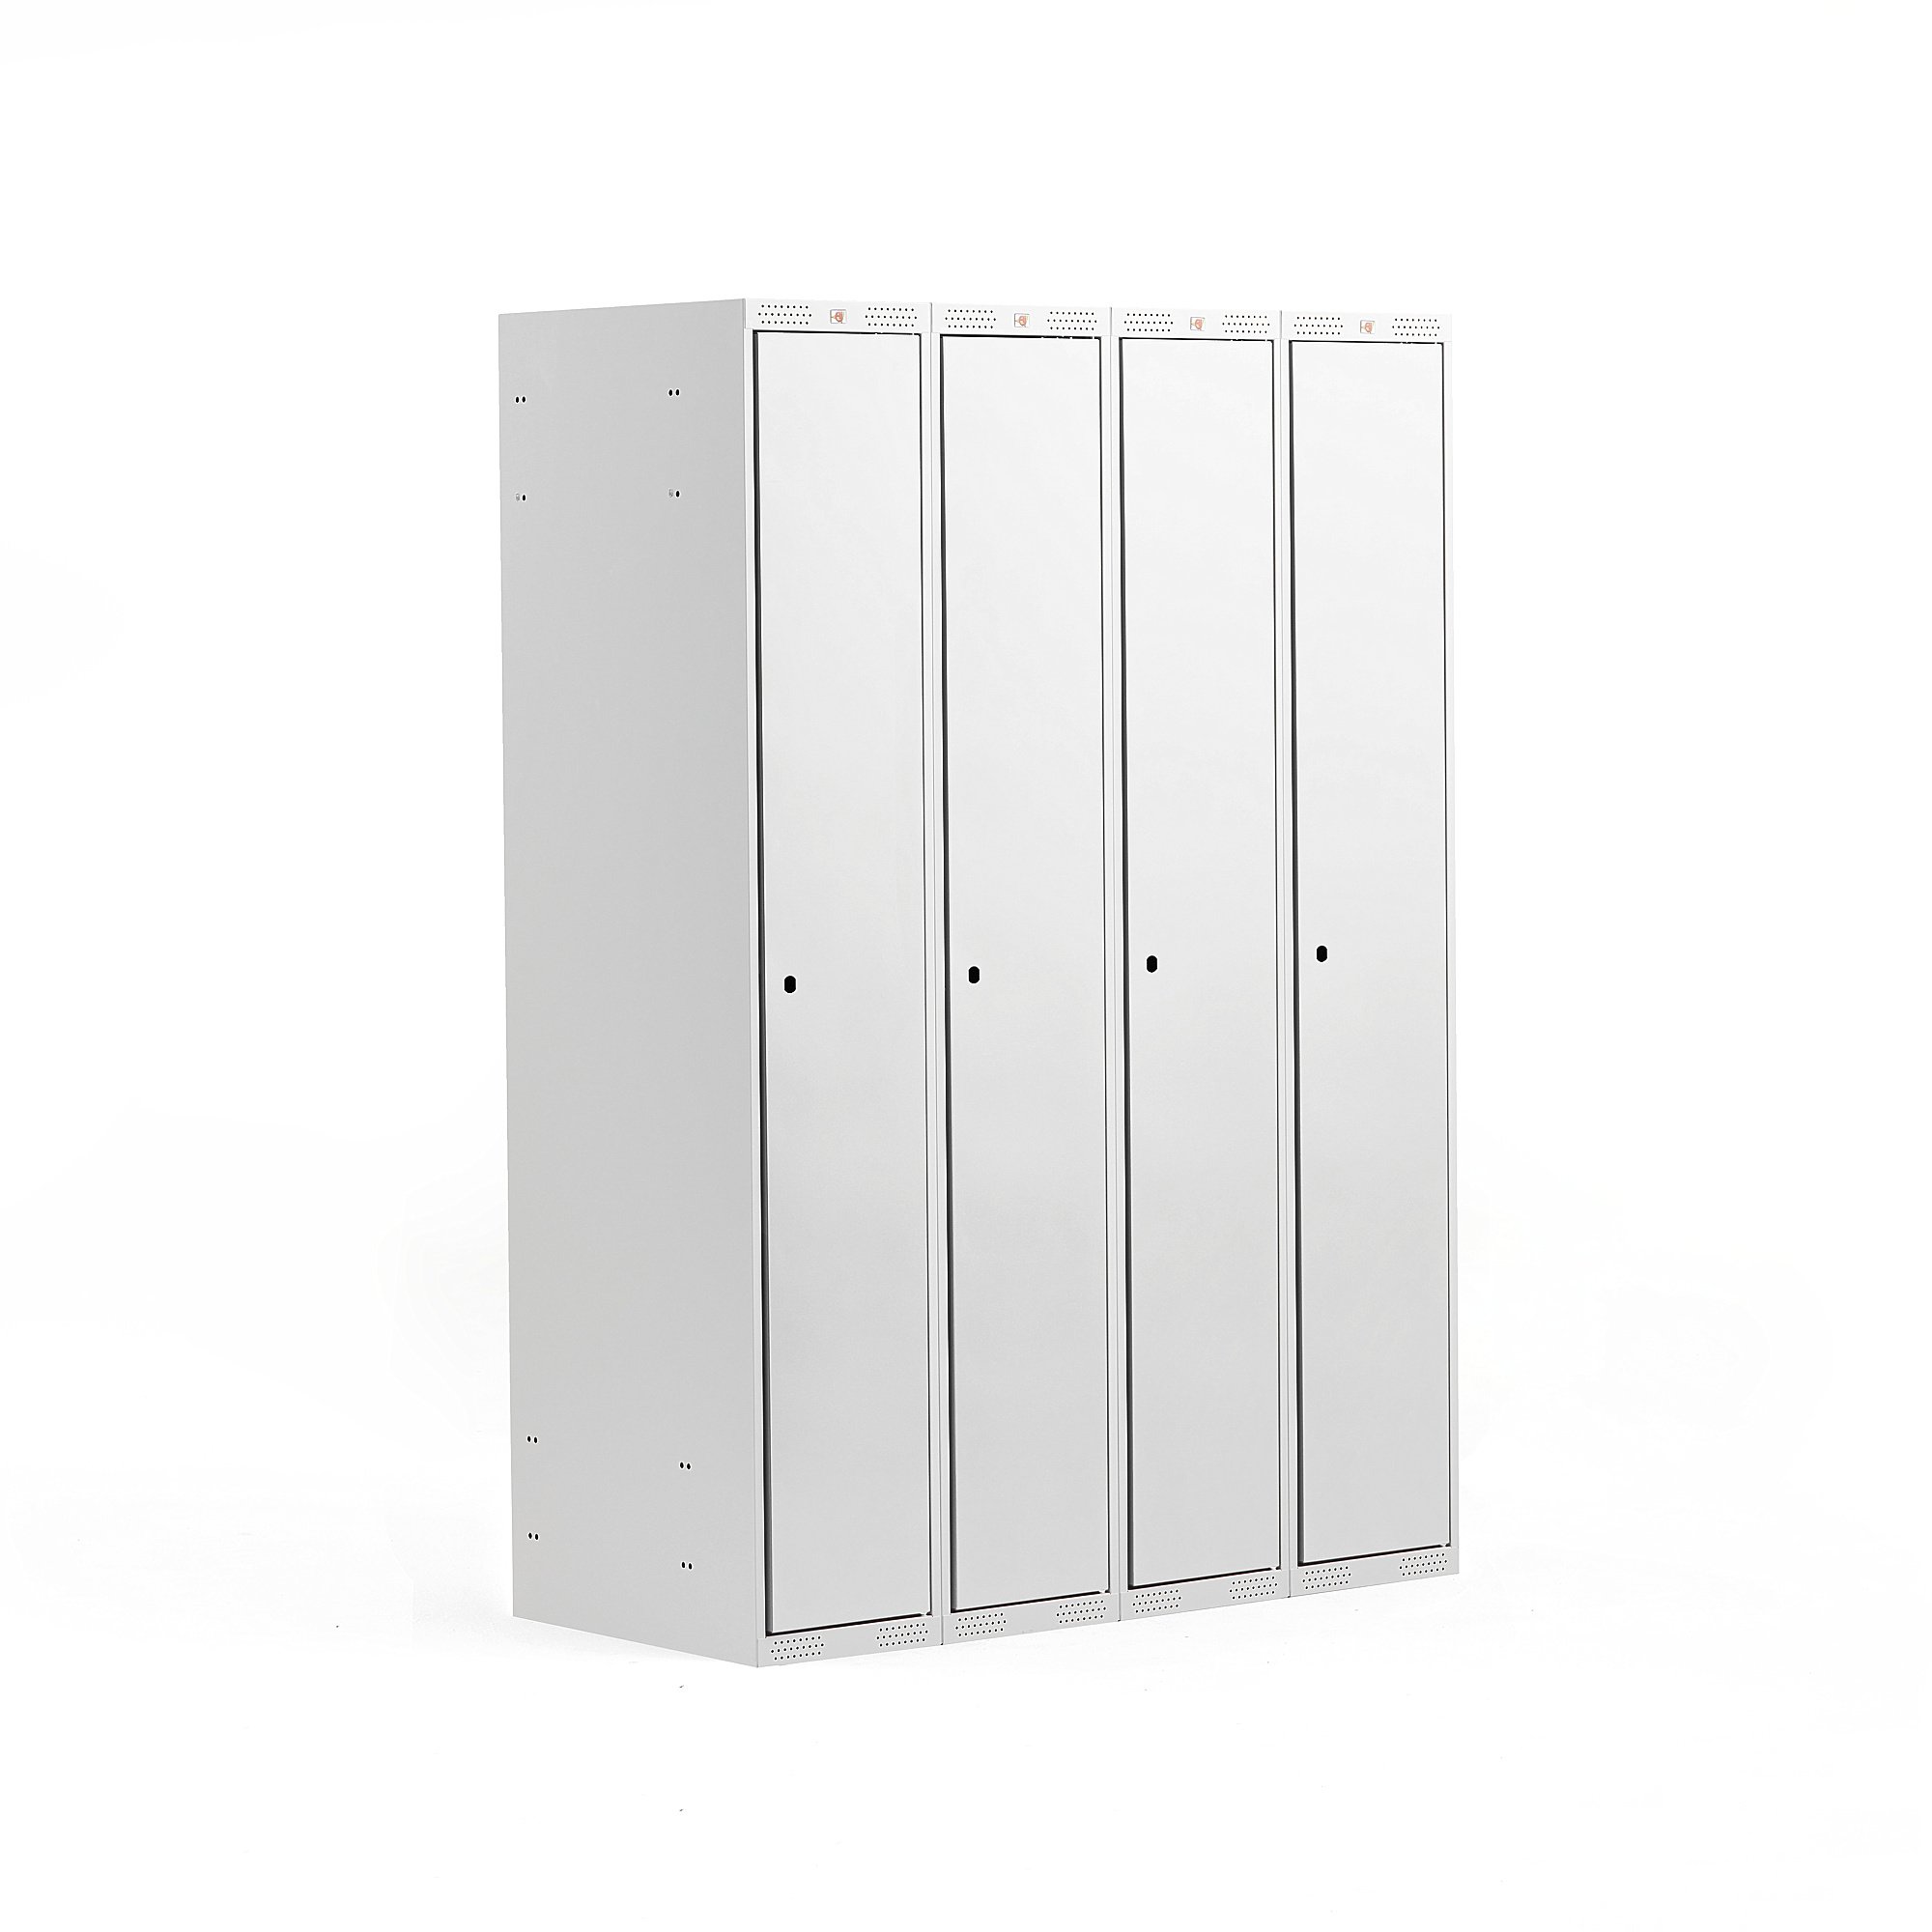 Šatní skříňka CLASSIC, 4 sekce, 1740x1200x550 mm, šedá, šedé dveře